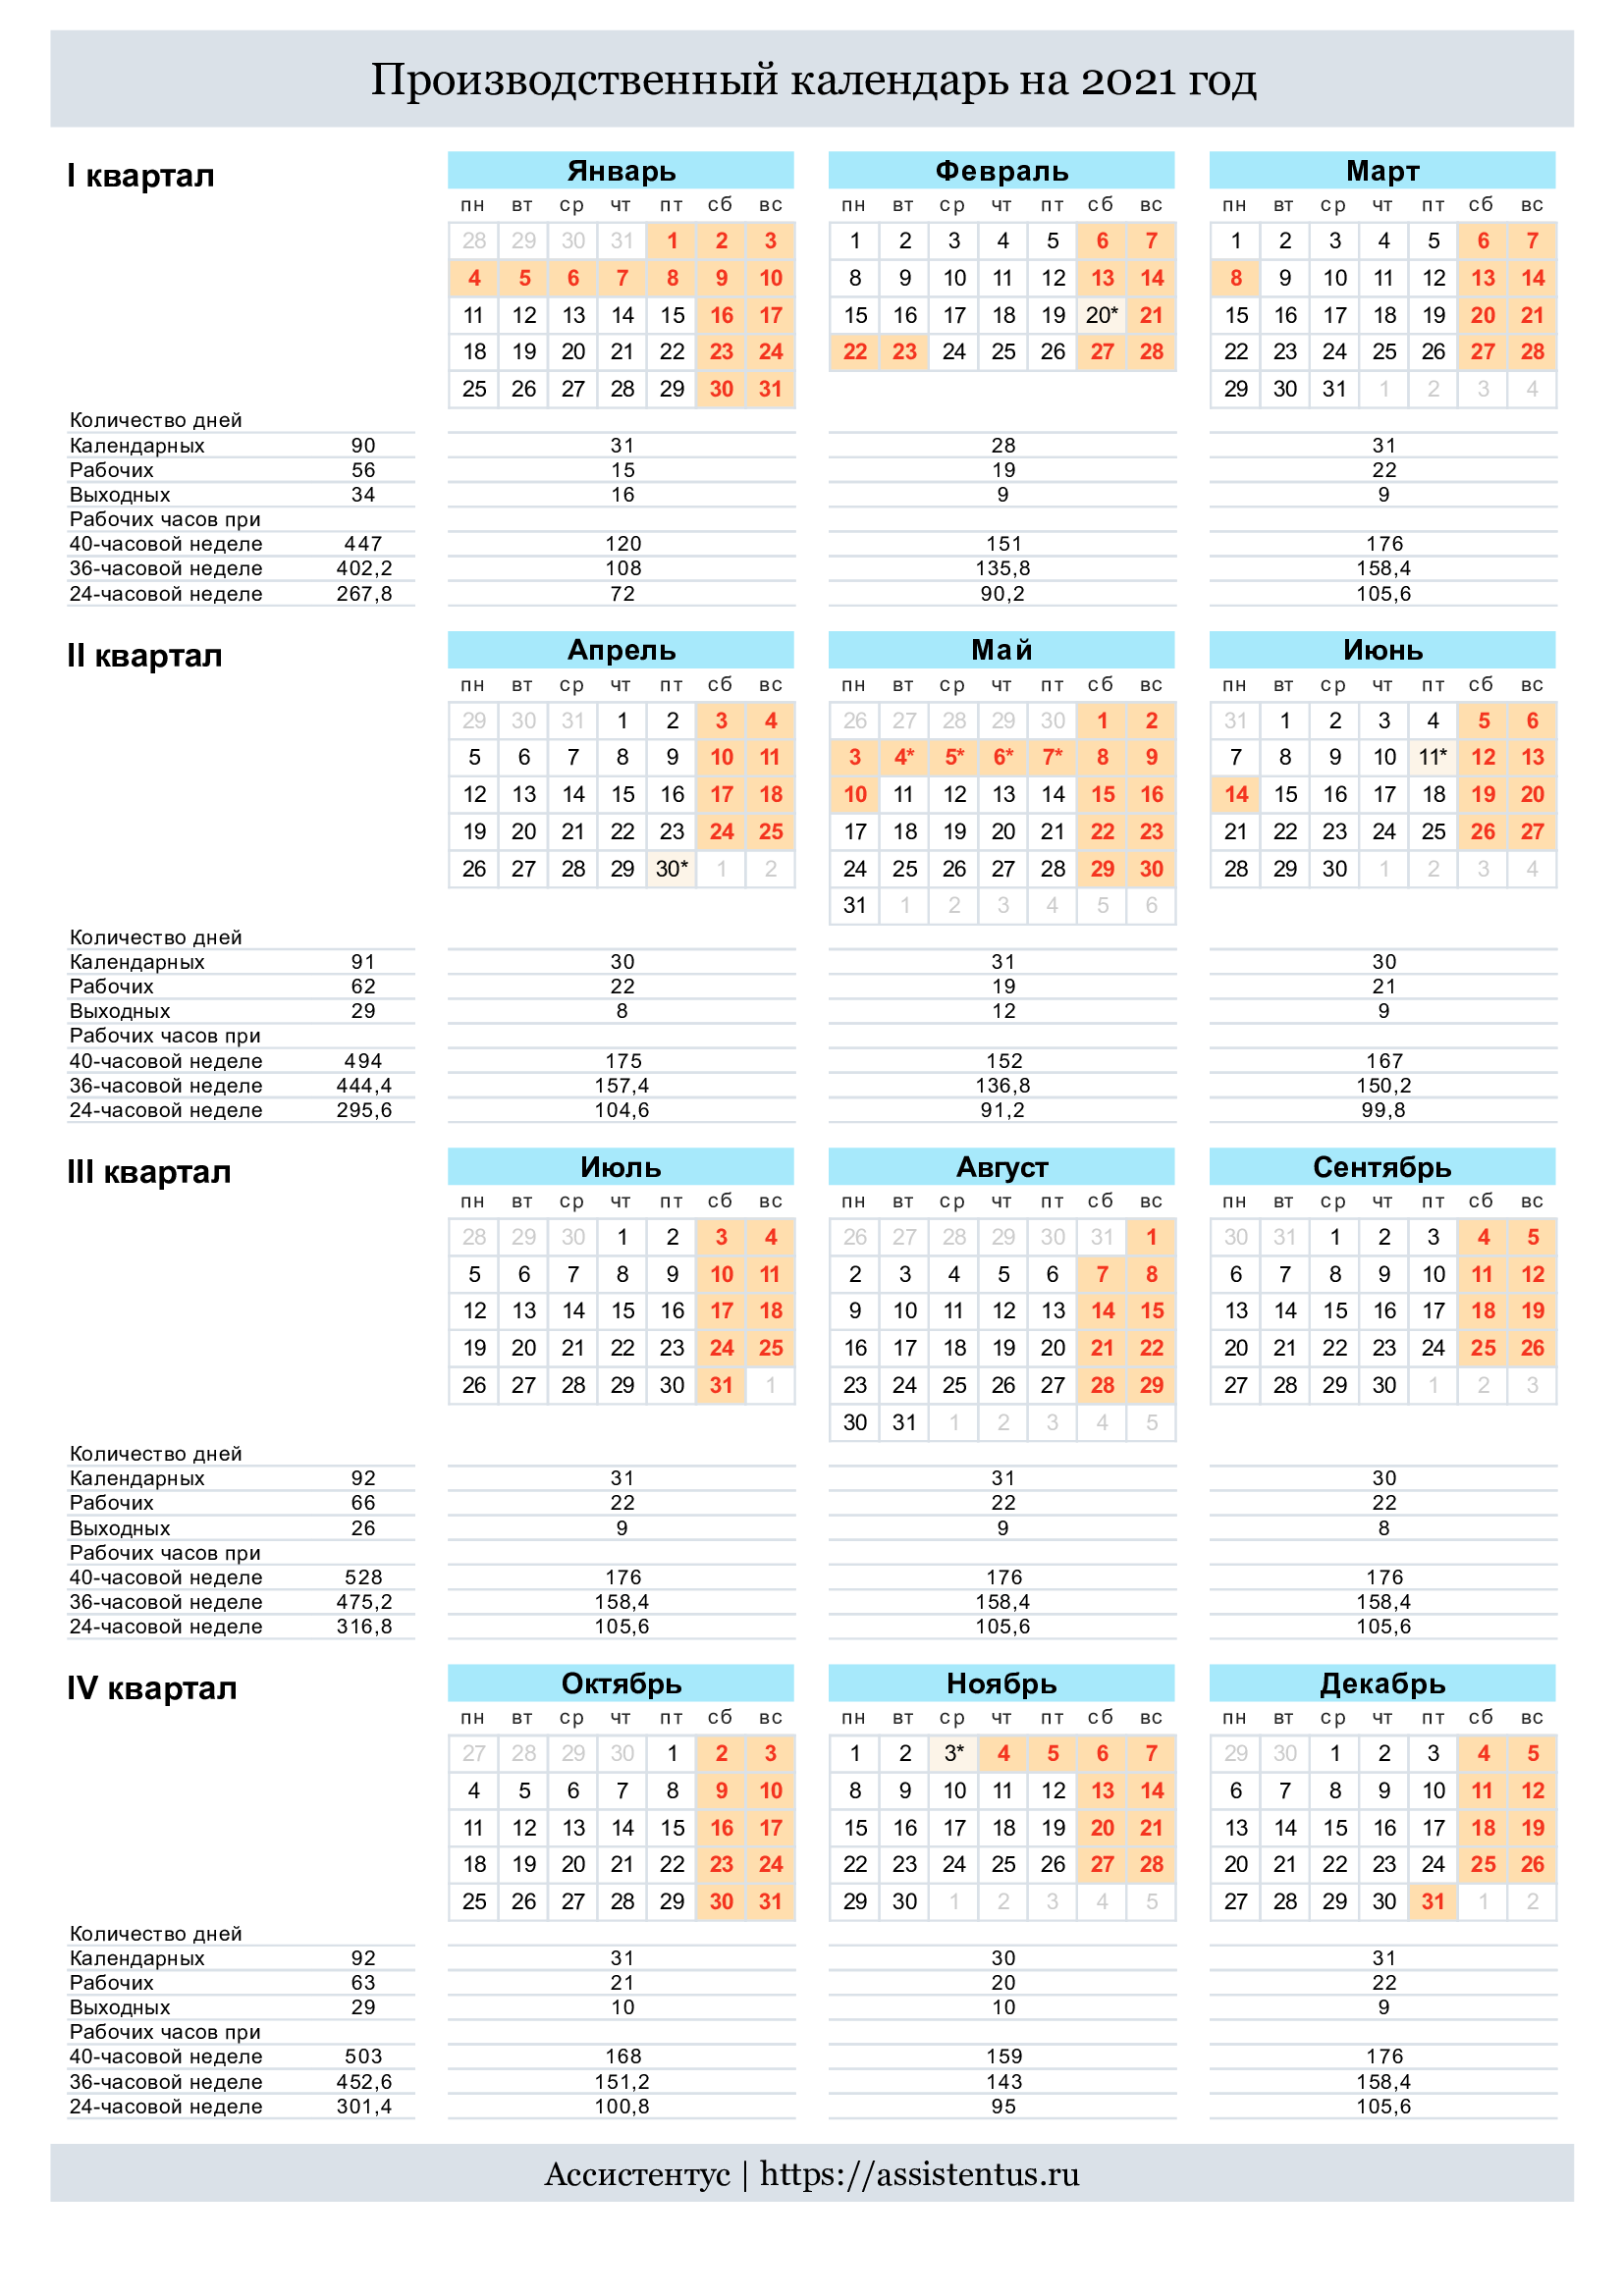 Производственный календарь на 2021 год. Выходные и праздники